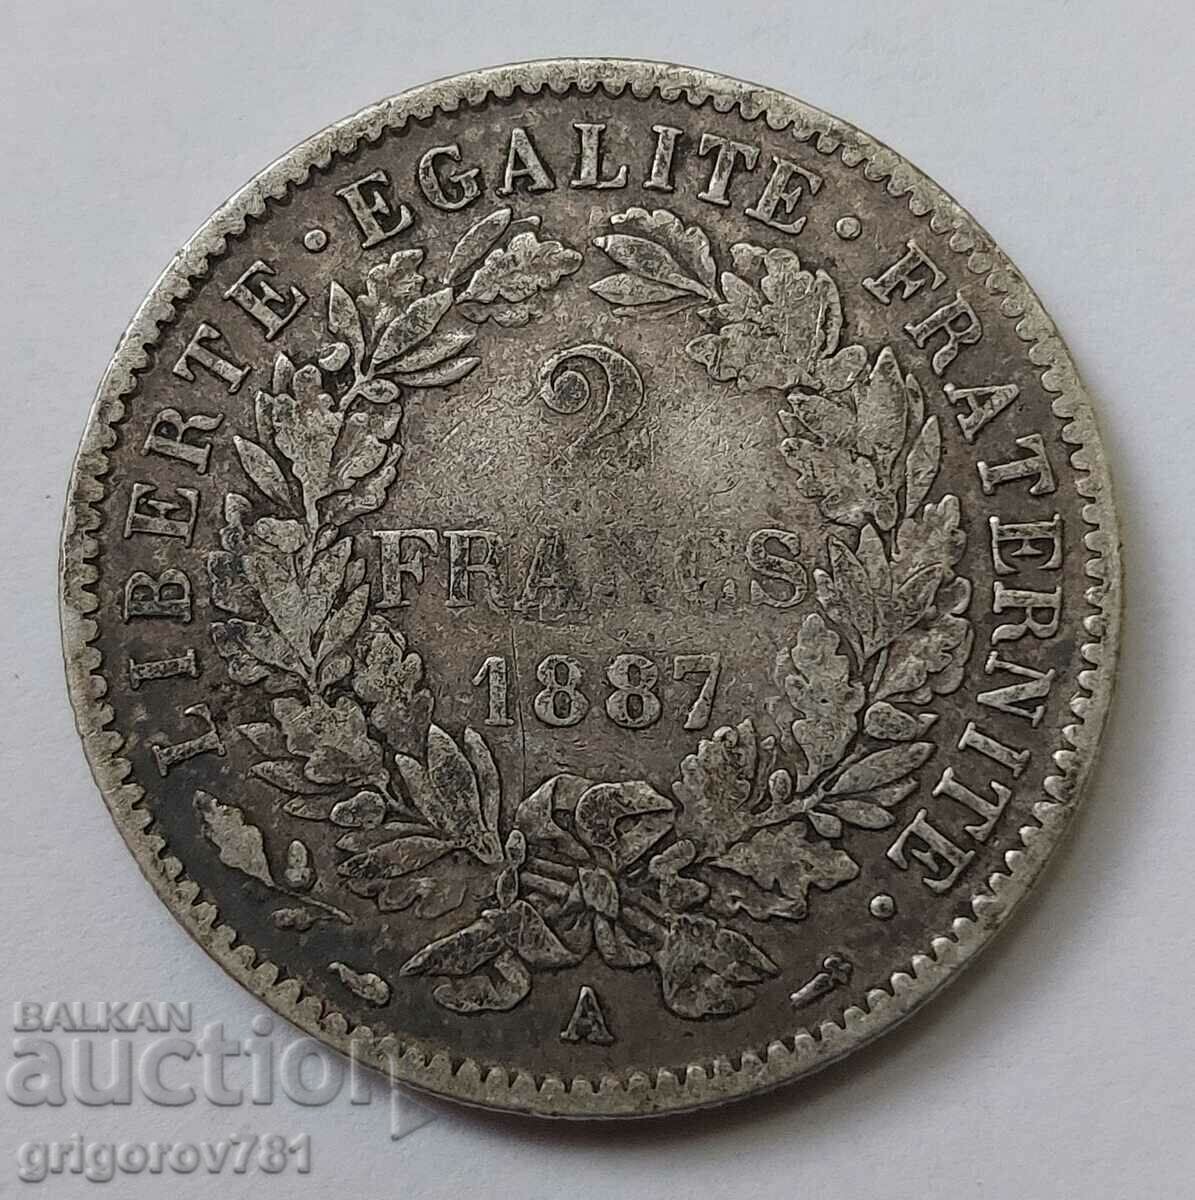 2 Φράγκα Ασήμι Γαλλία 1887 A - Ασημένιο νόμισμα #154